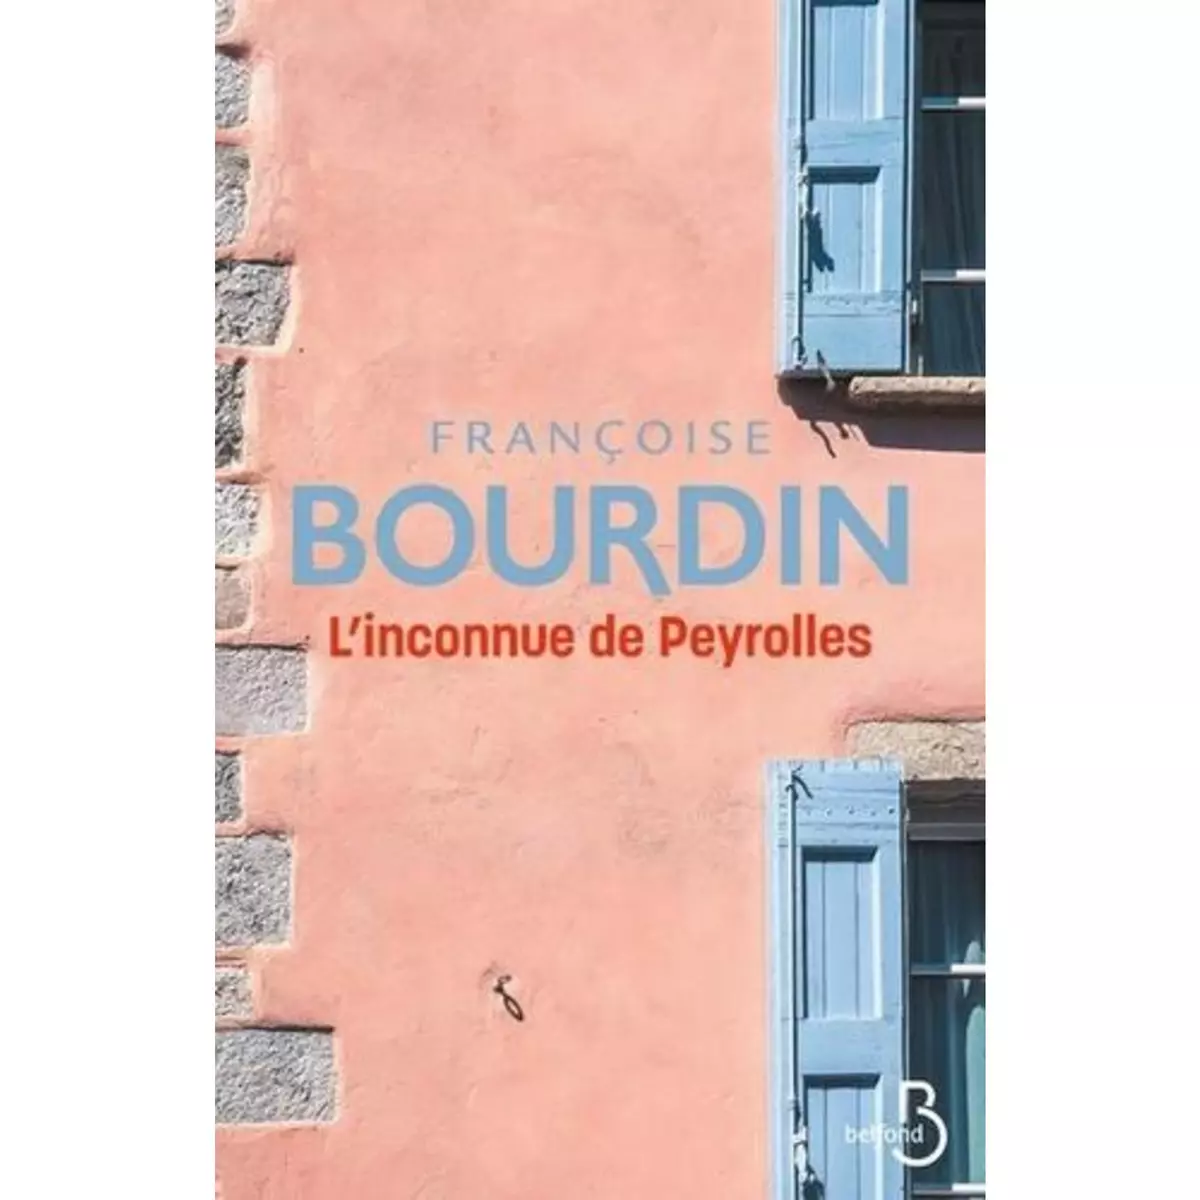  L'INCONNUE DE PEYROLLES, Bourdin Françoise